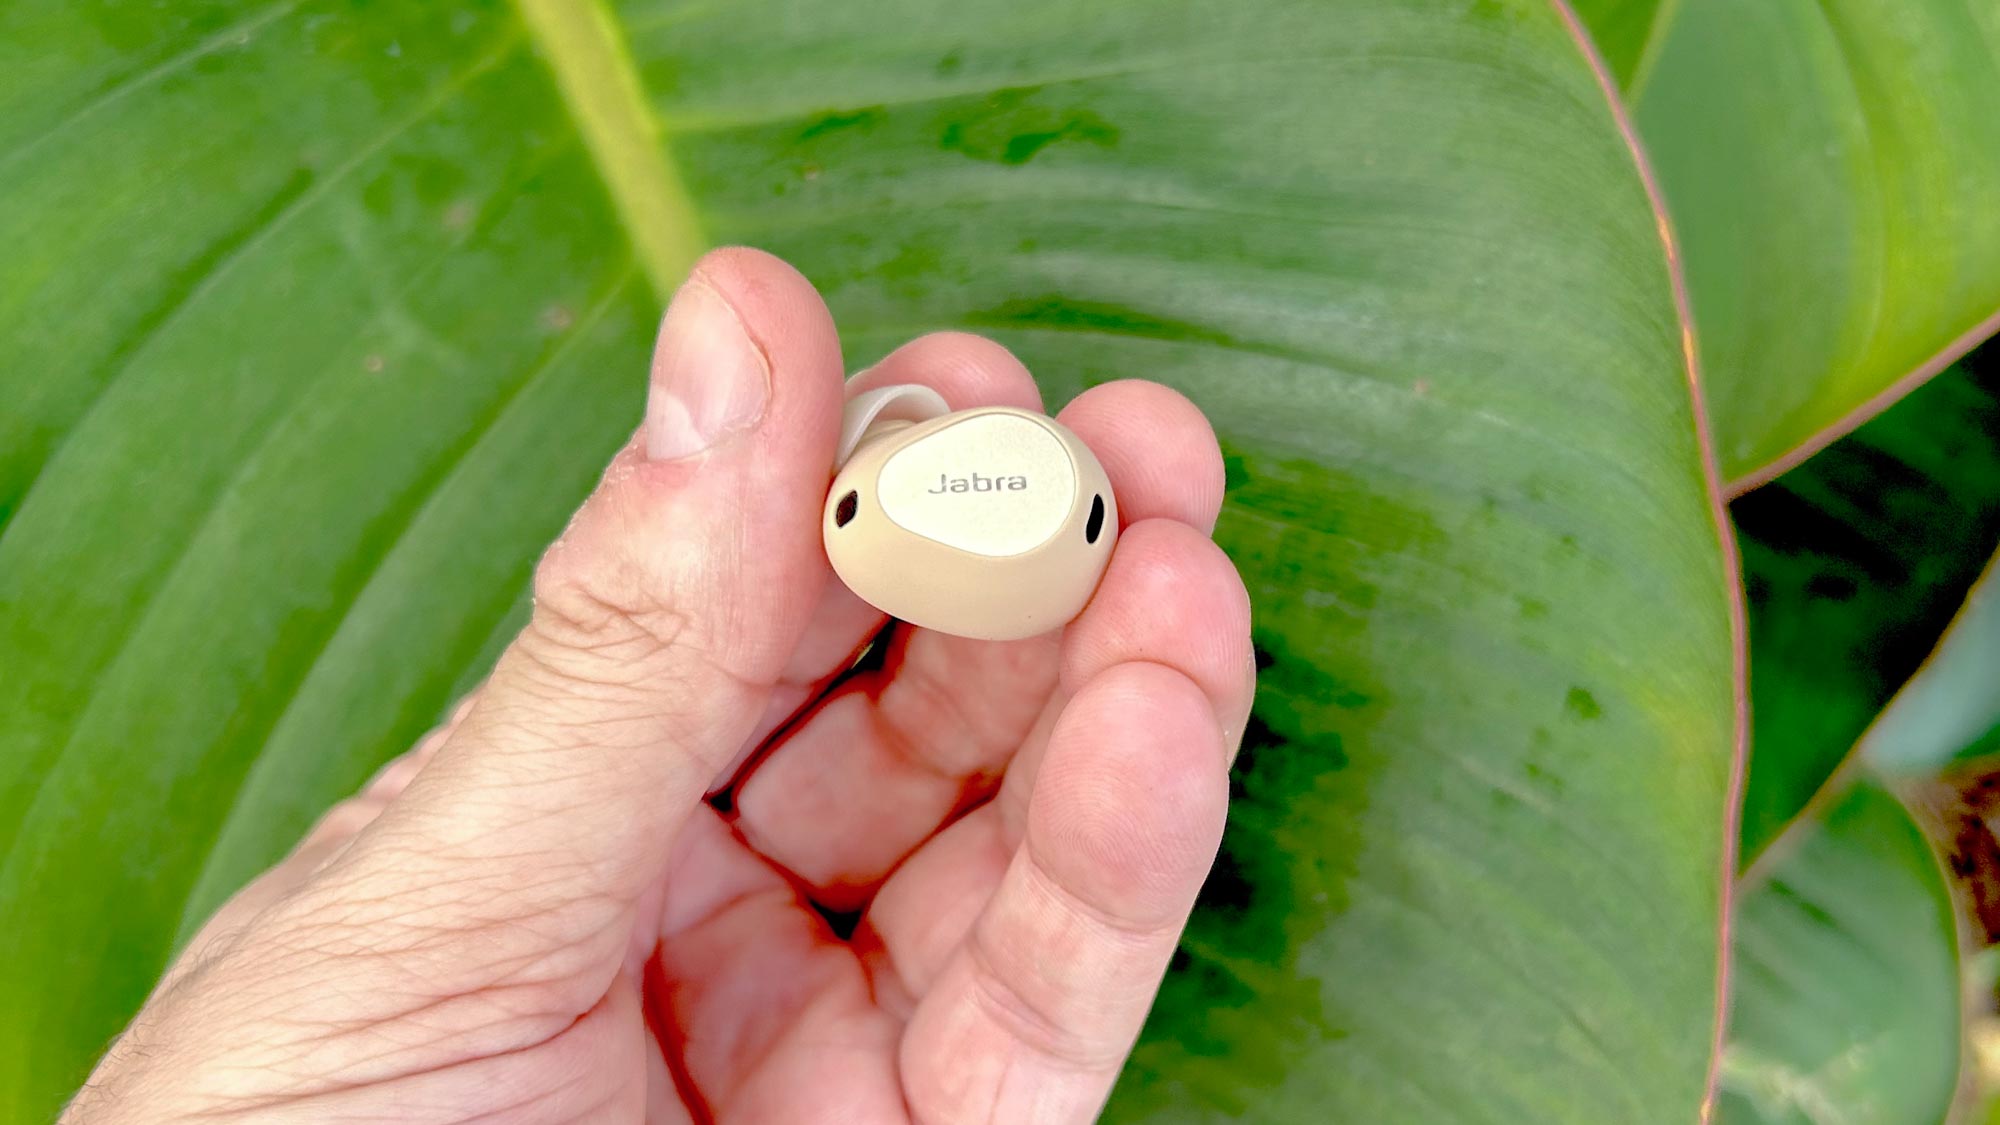 Jabra Elite 10 showing single bud between finger tips against tropical vegetation background